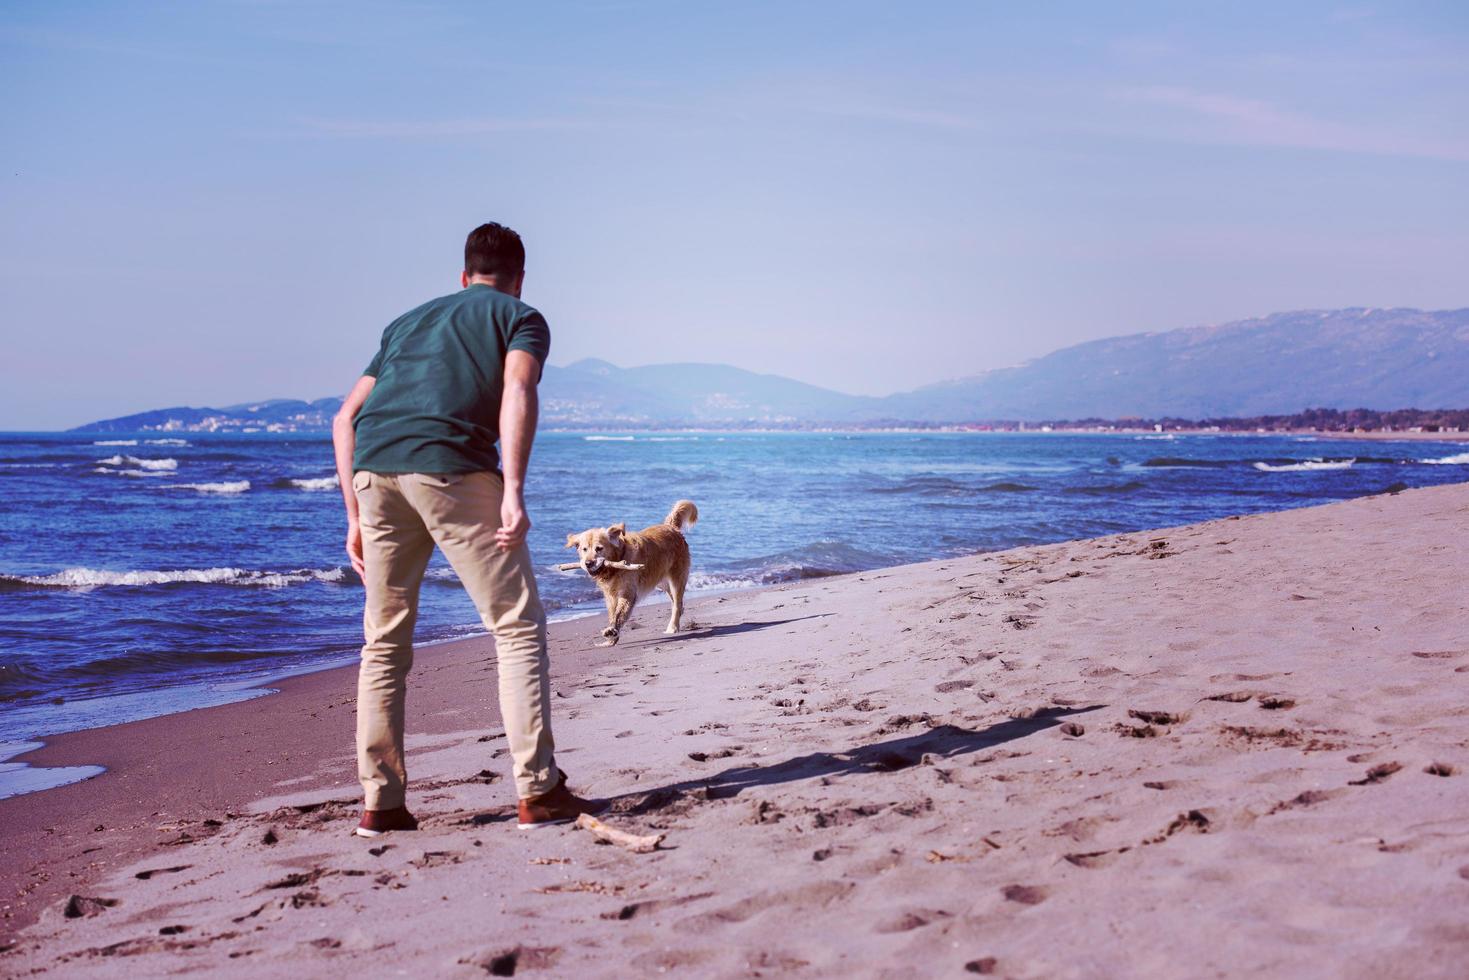 homme avec chien profitant du temps libre sur la plage photo